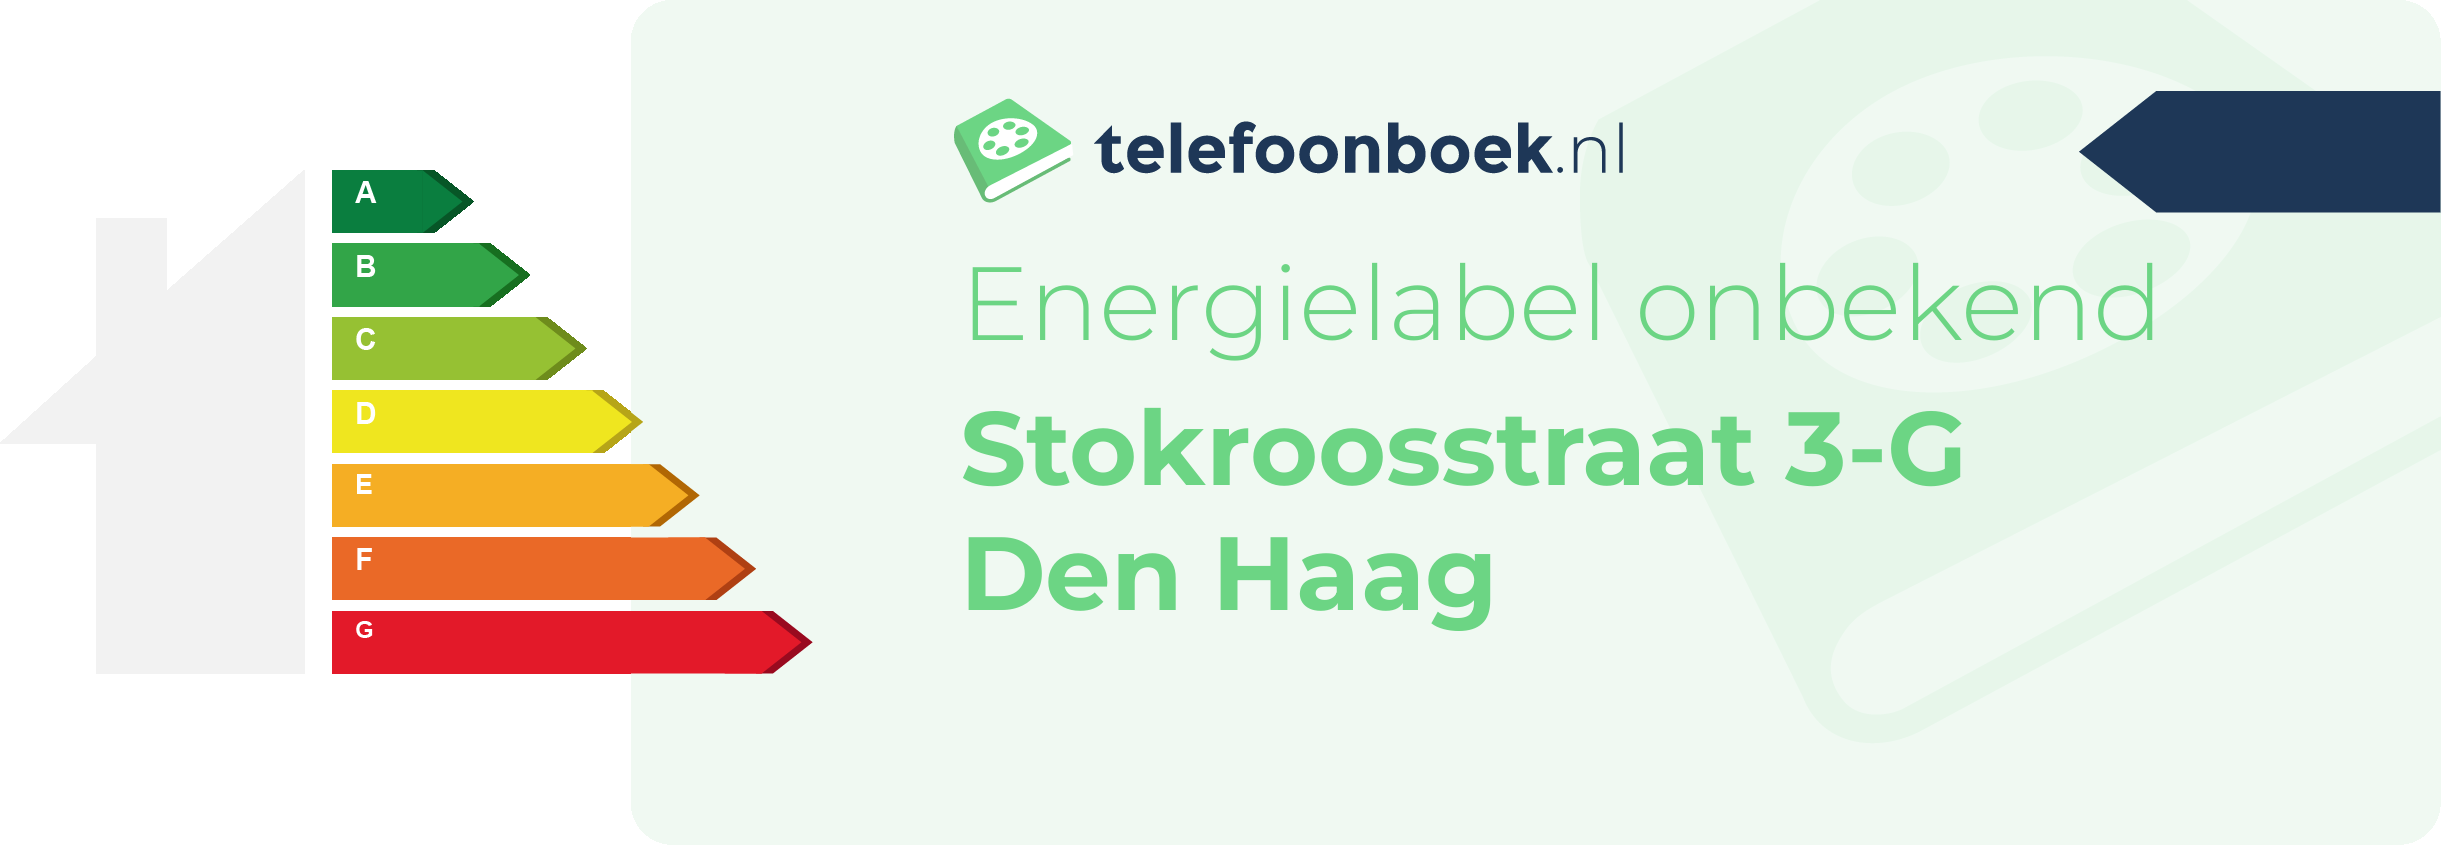 Energielabel Stokroosstraat 3-G Den Haag